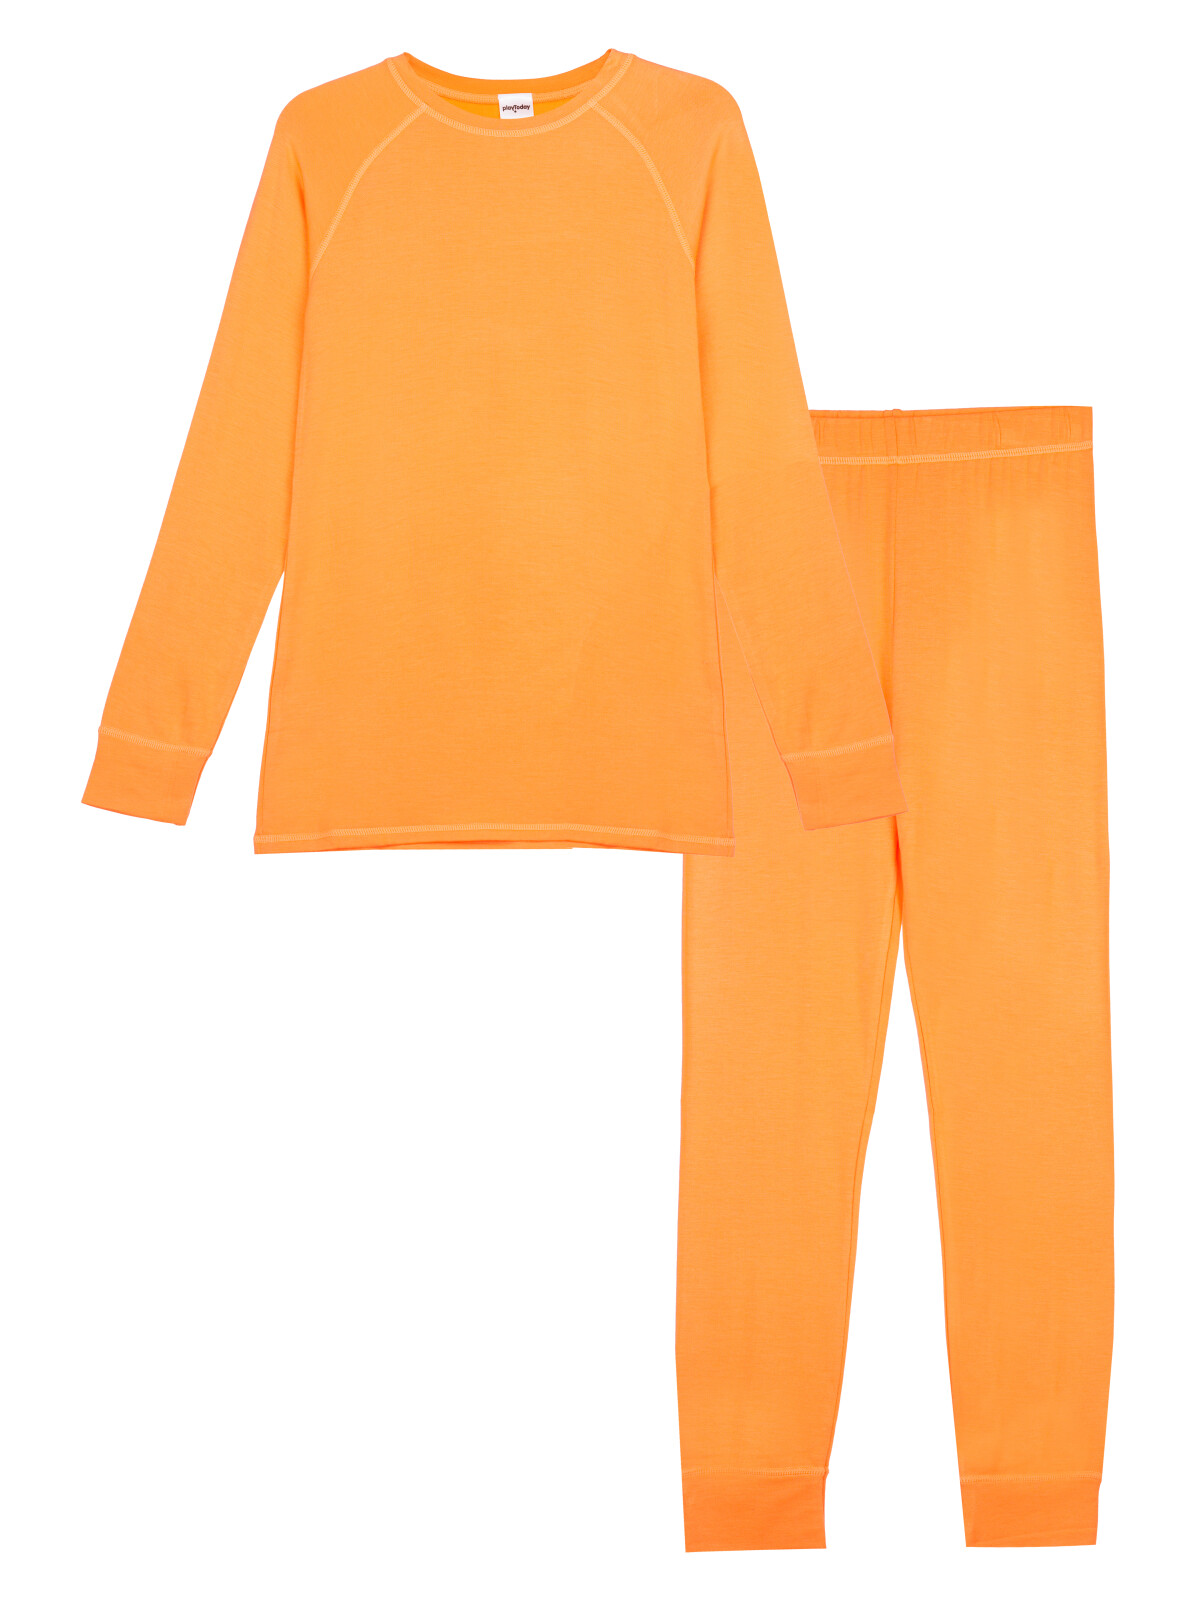 Термокомплект для девочек PlayToday: брюки, толстовка, оранжевый, 158